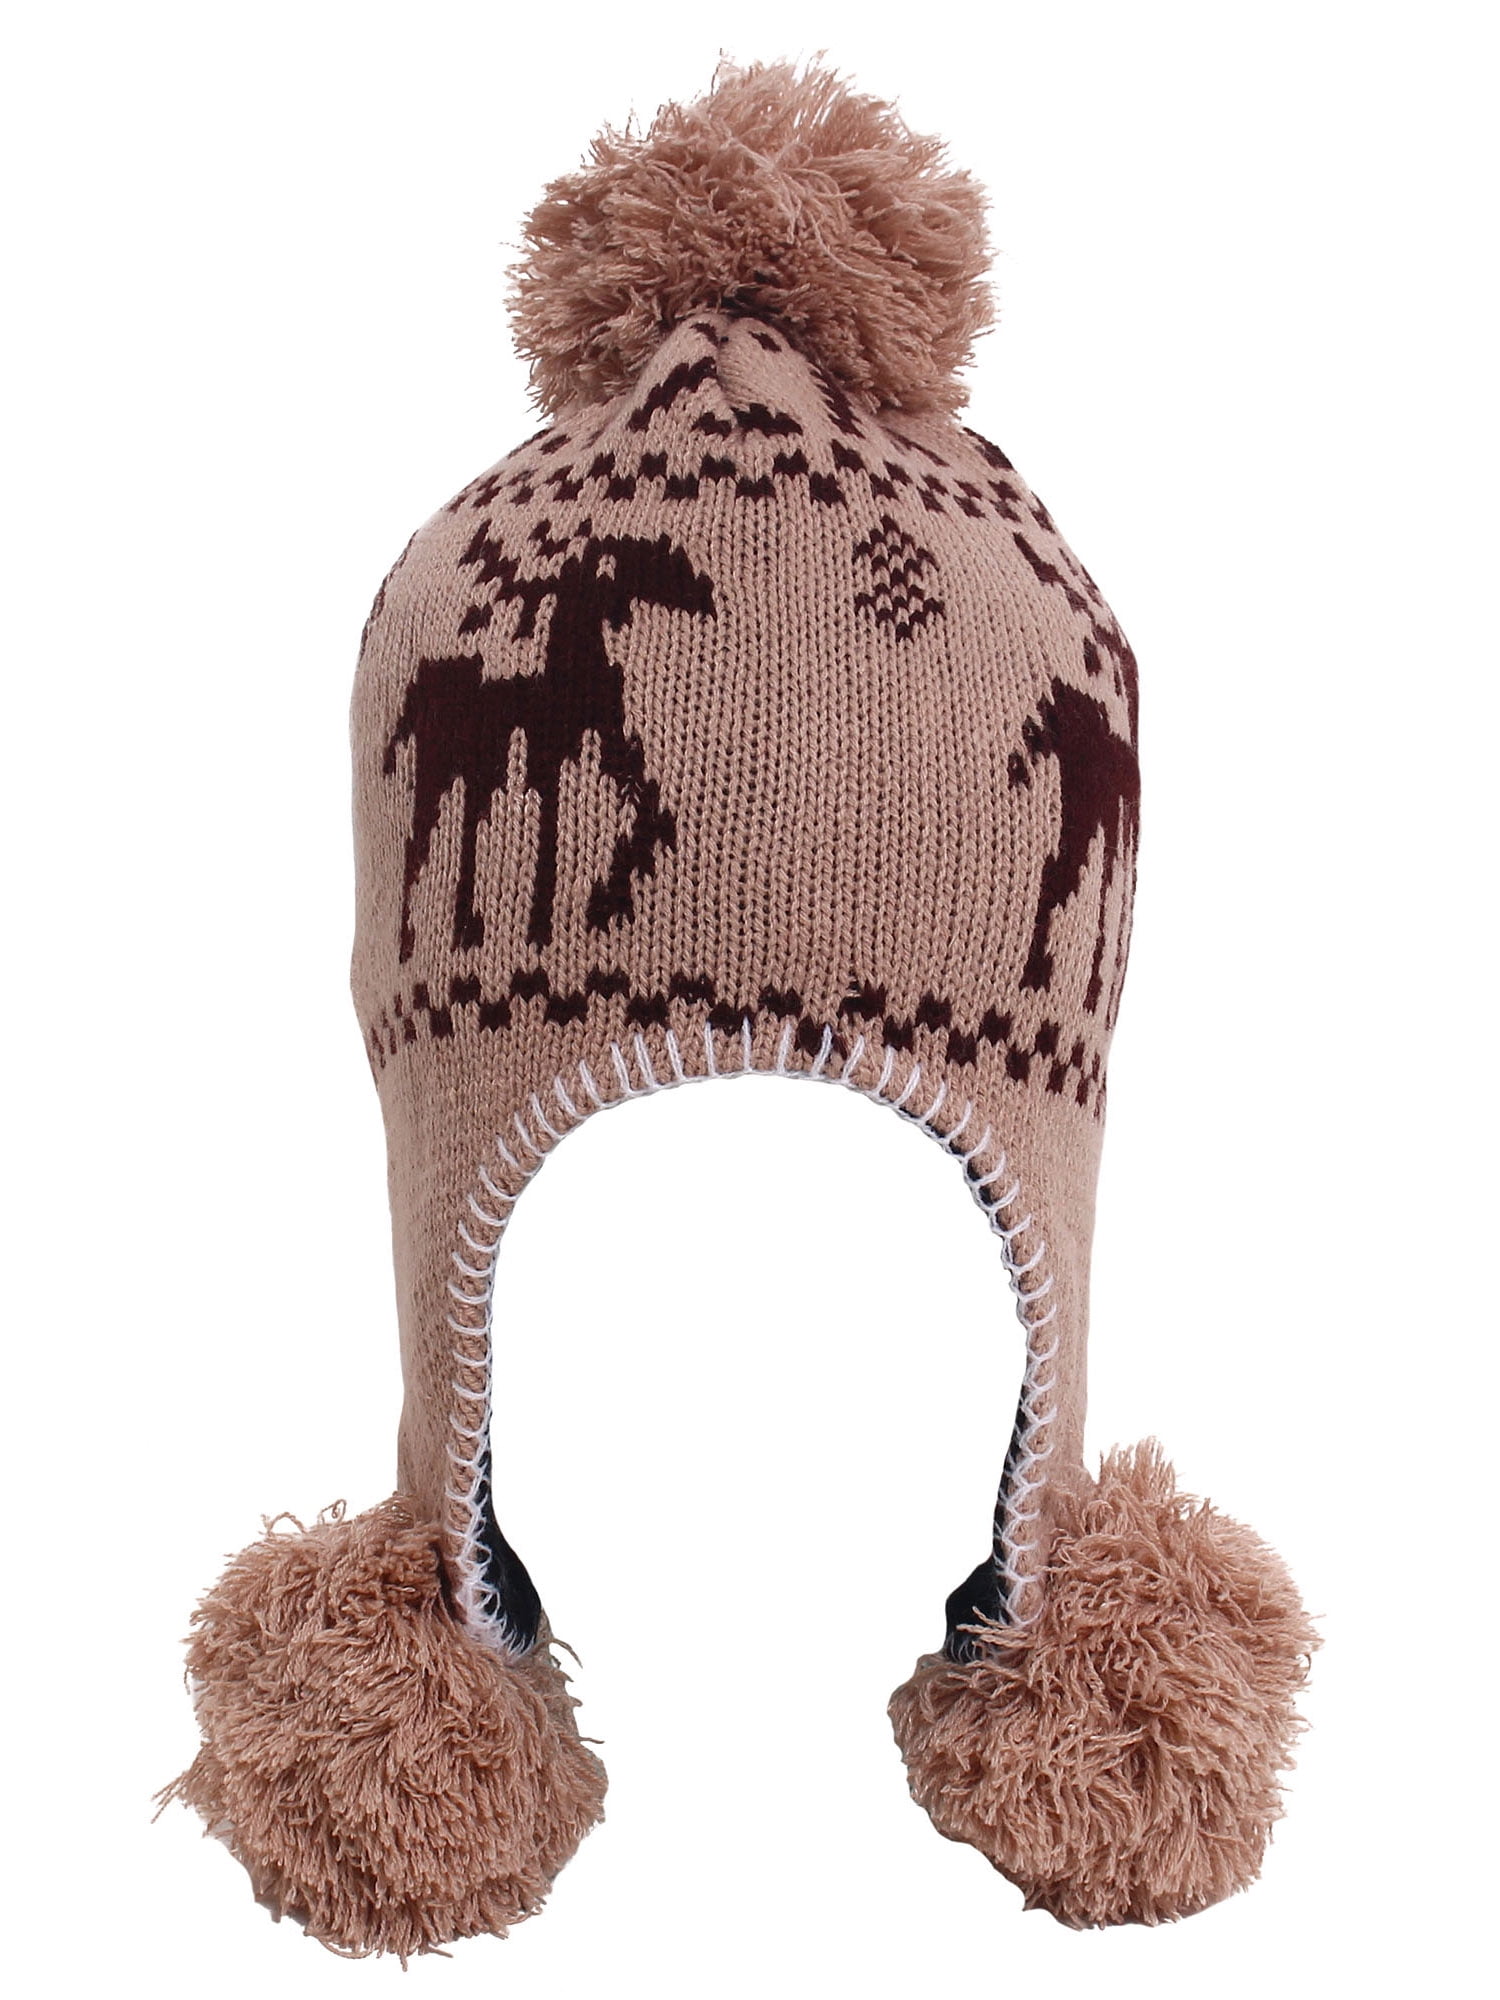 NWT Girls CARHARTT Pink Winter Knit Hat Cap Warm Cozy Fleece Lined Ear Flaps 